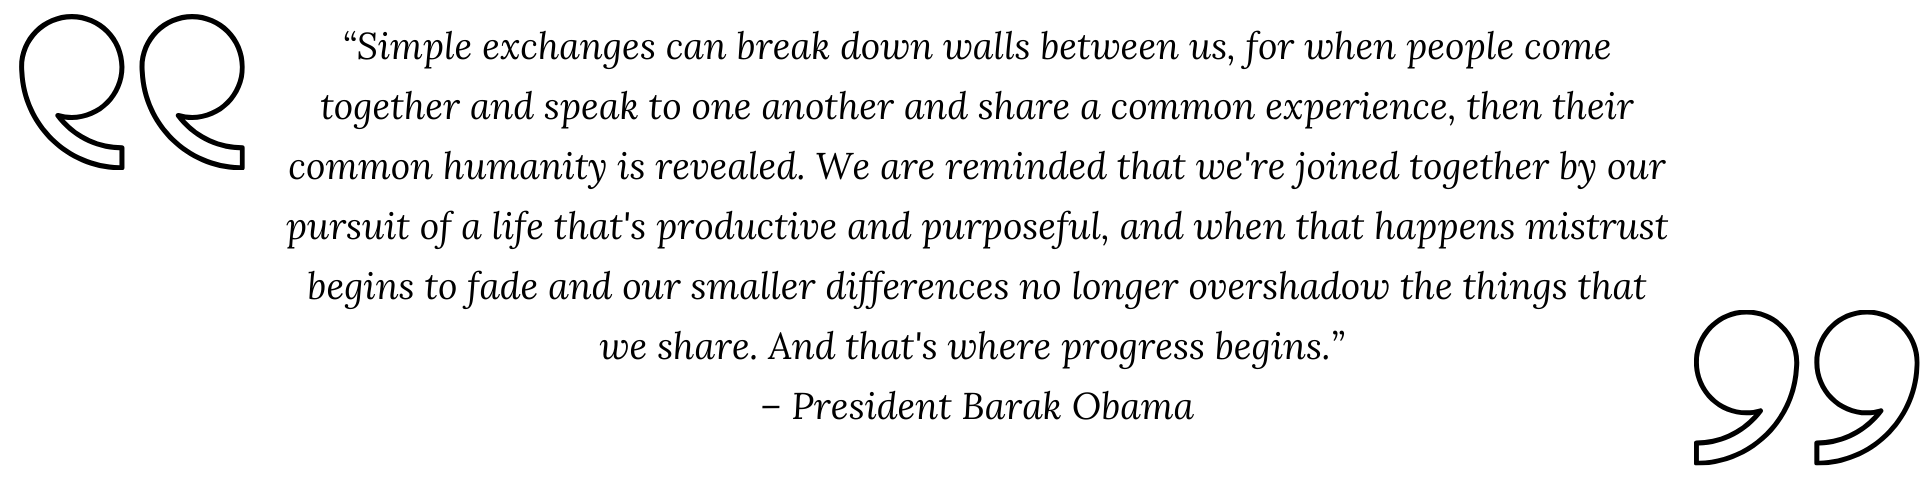 Barak Obama quote